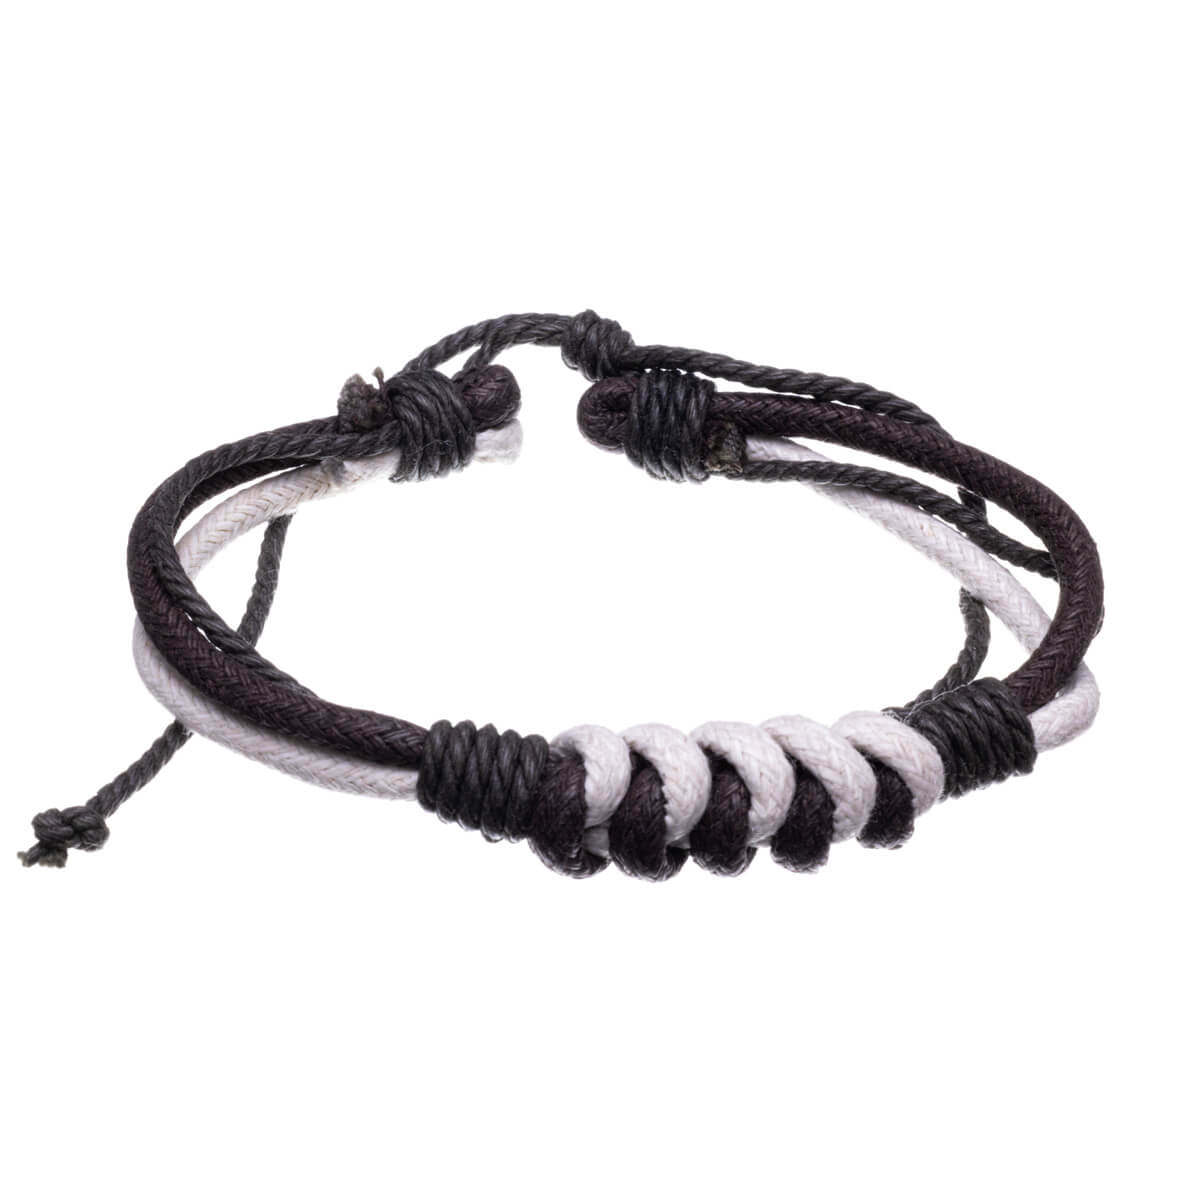 Adjustable three-row cord bracelet